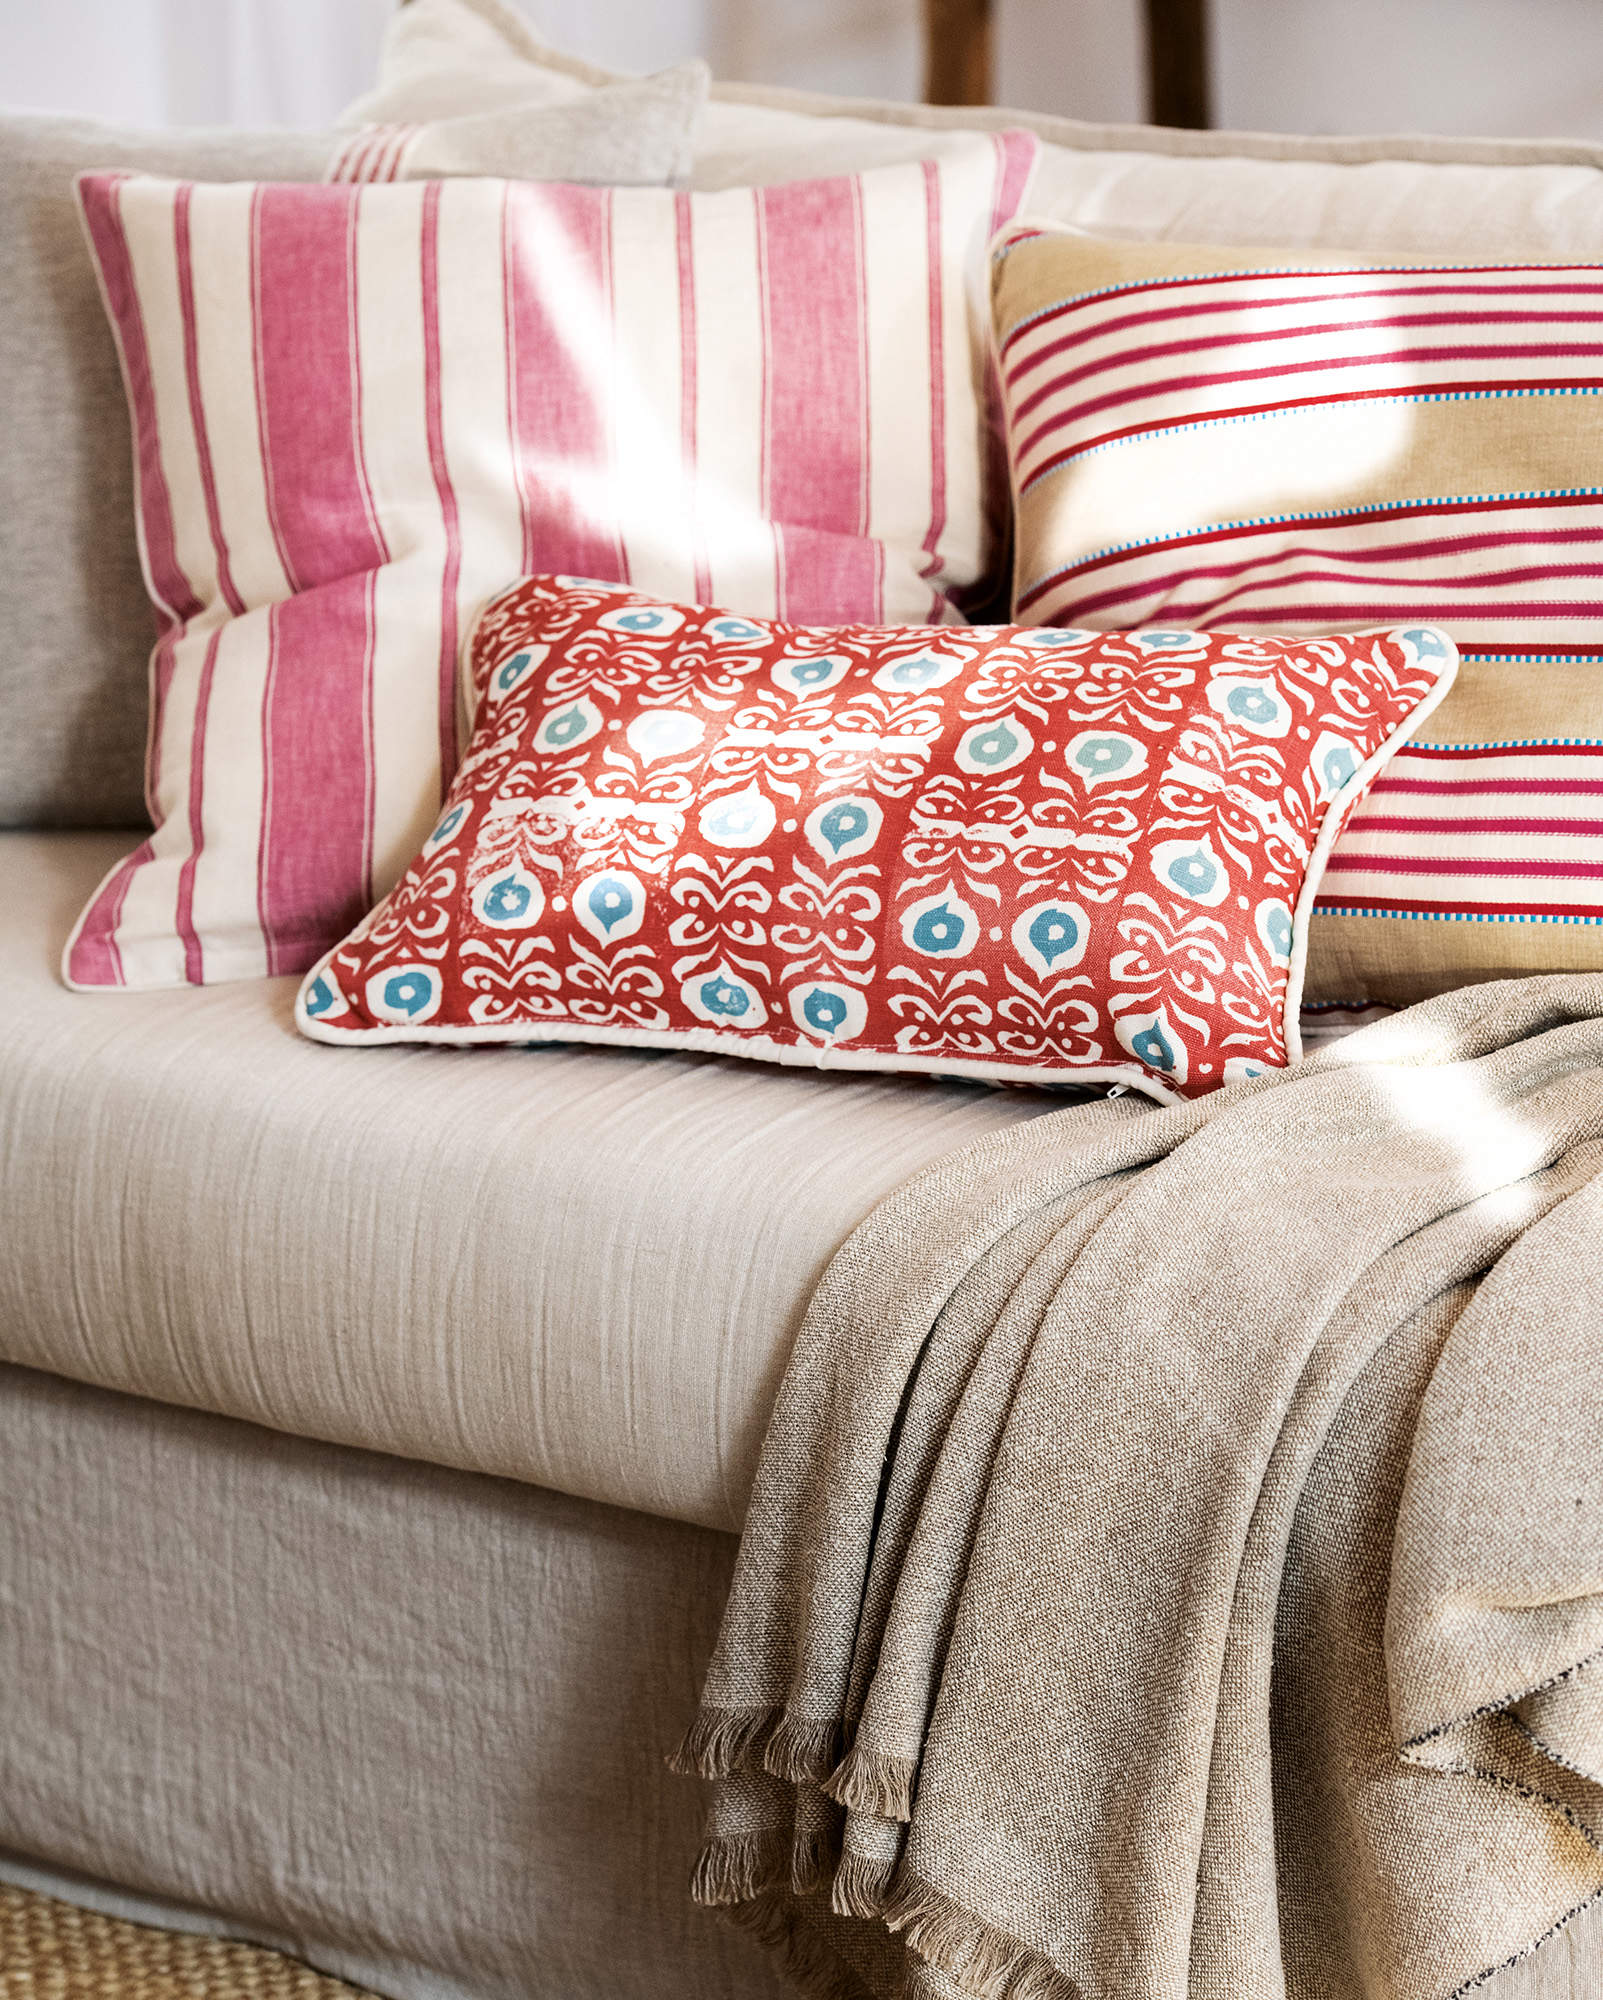 Detalle de los cojines en tonos rojo, rosa y fresa en el sofá. 